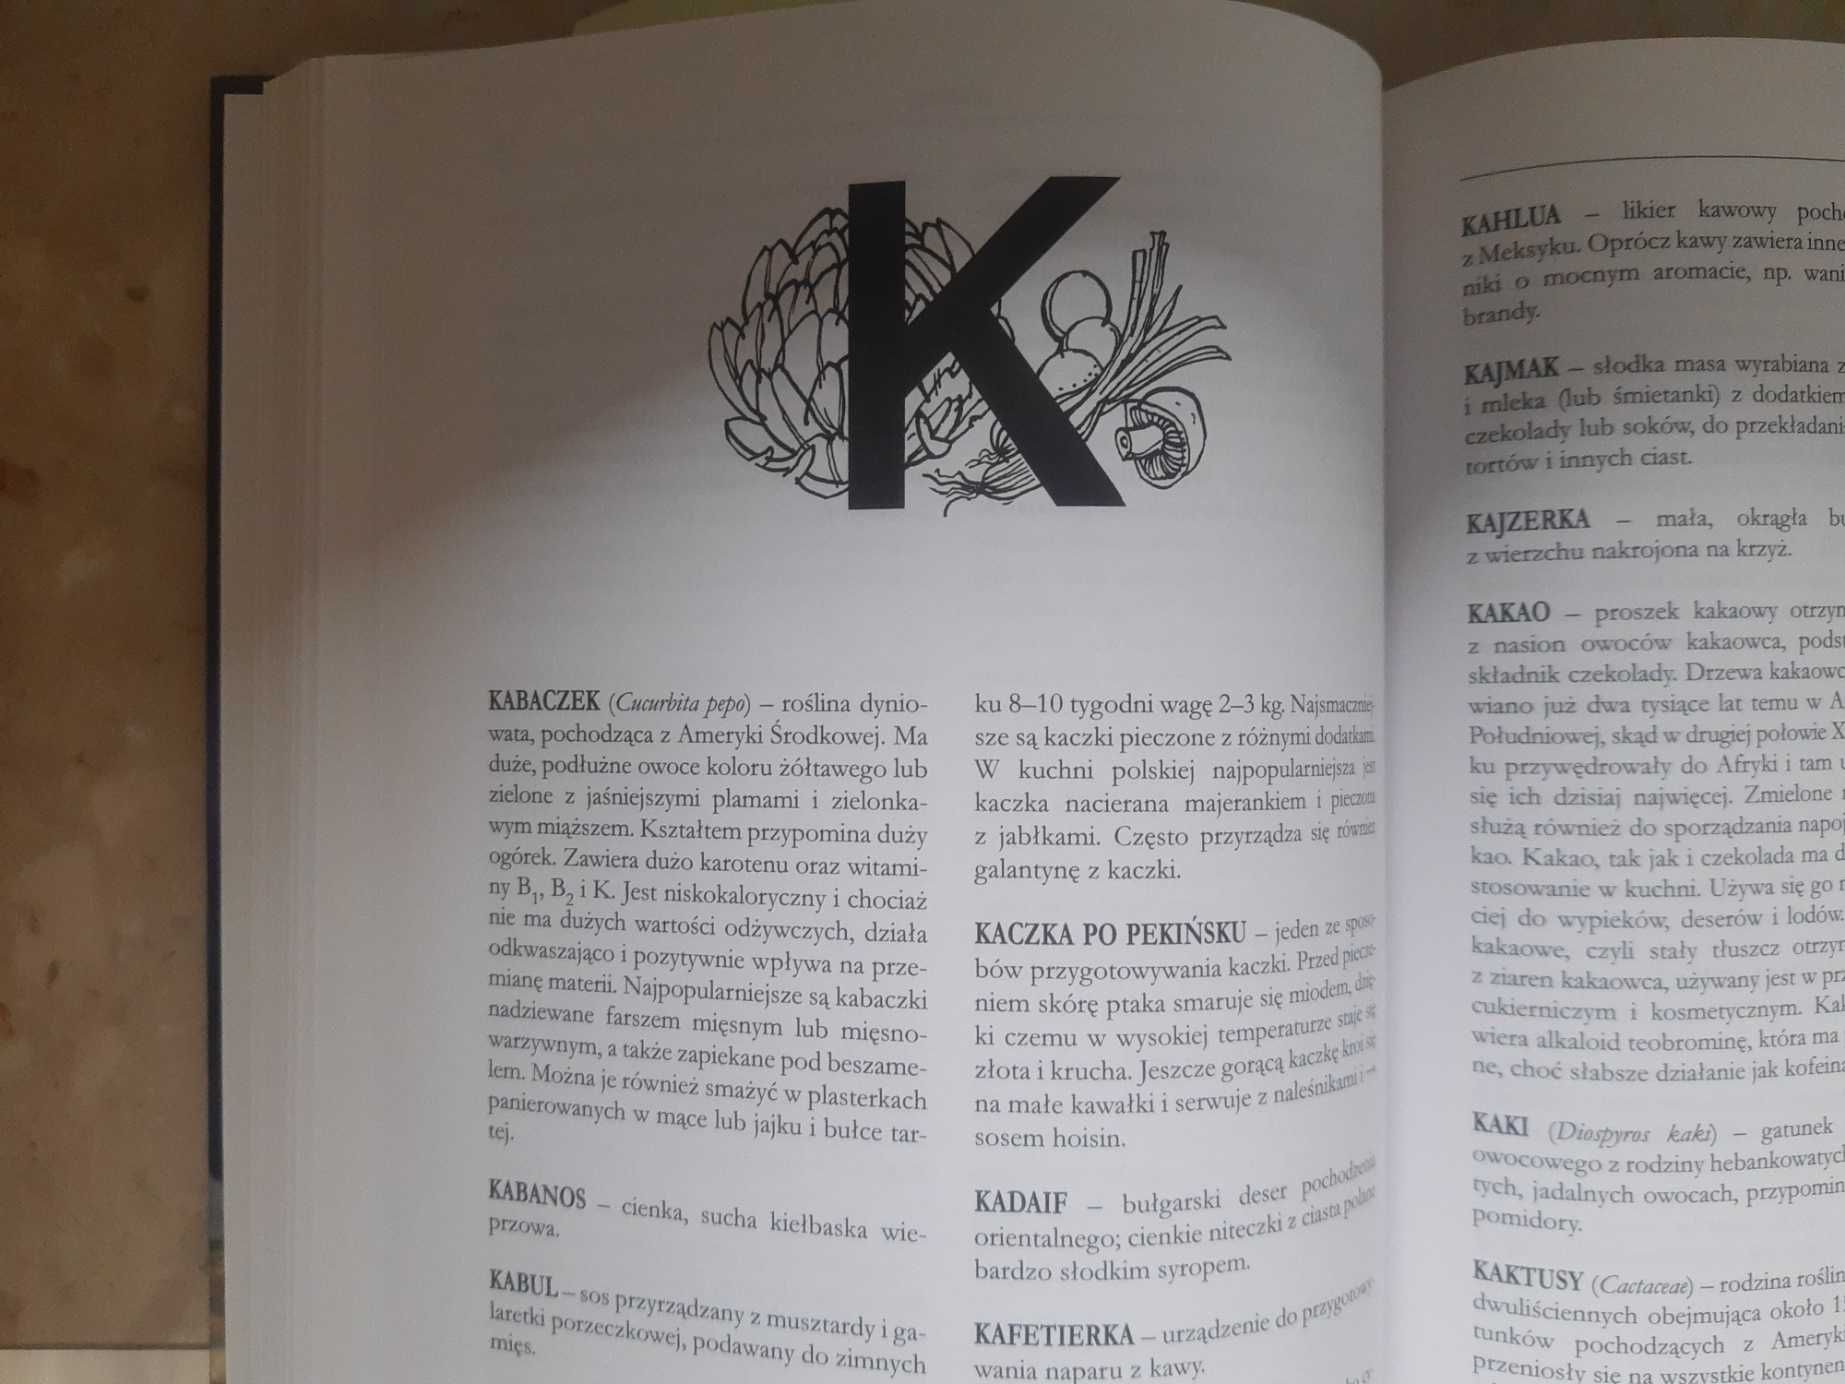 Słownik sztuki kulinarnej Maria Romanowska